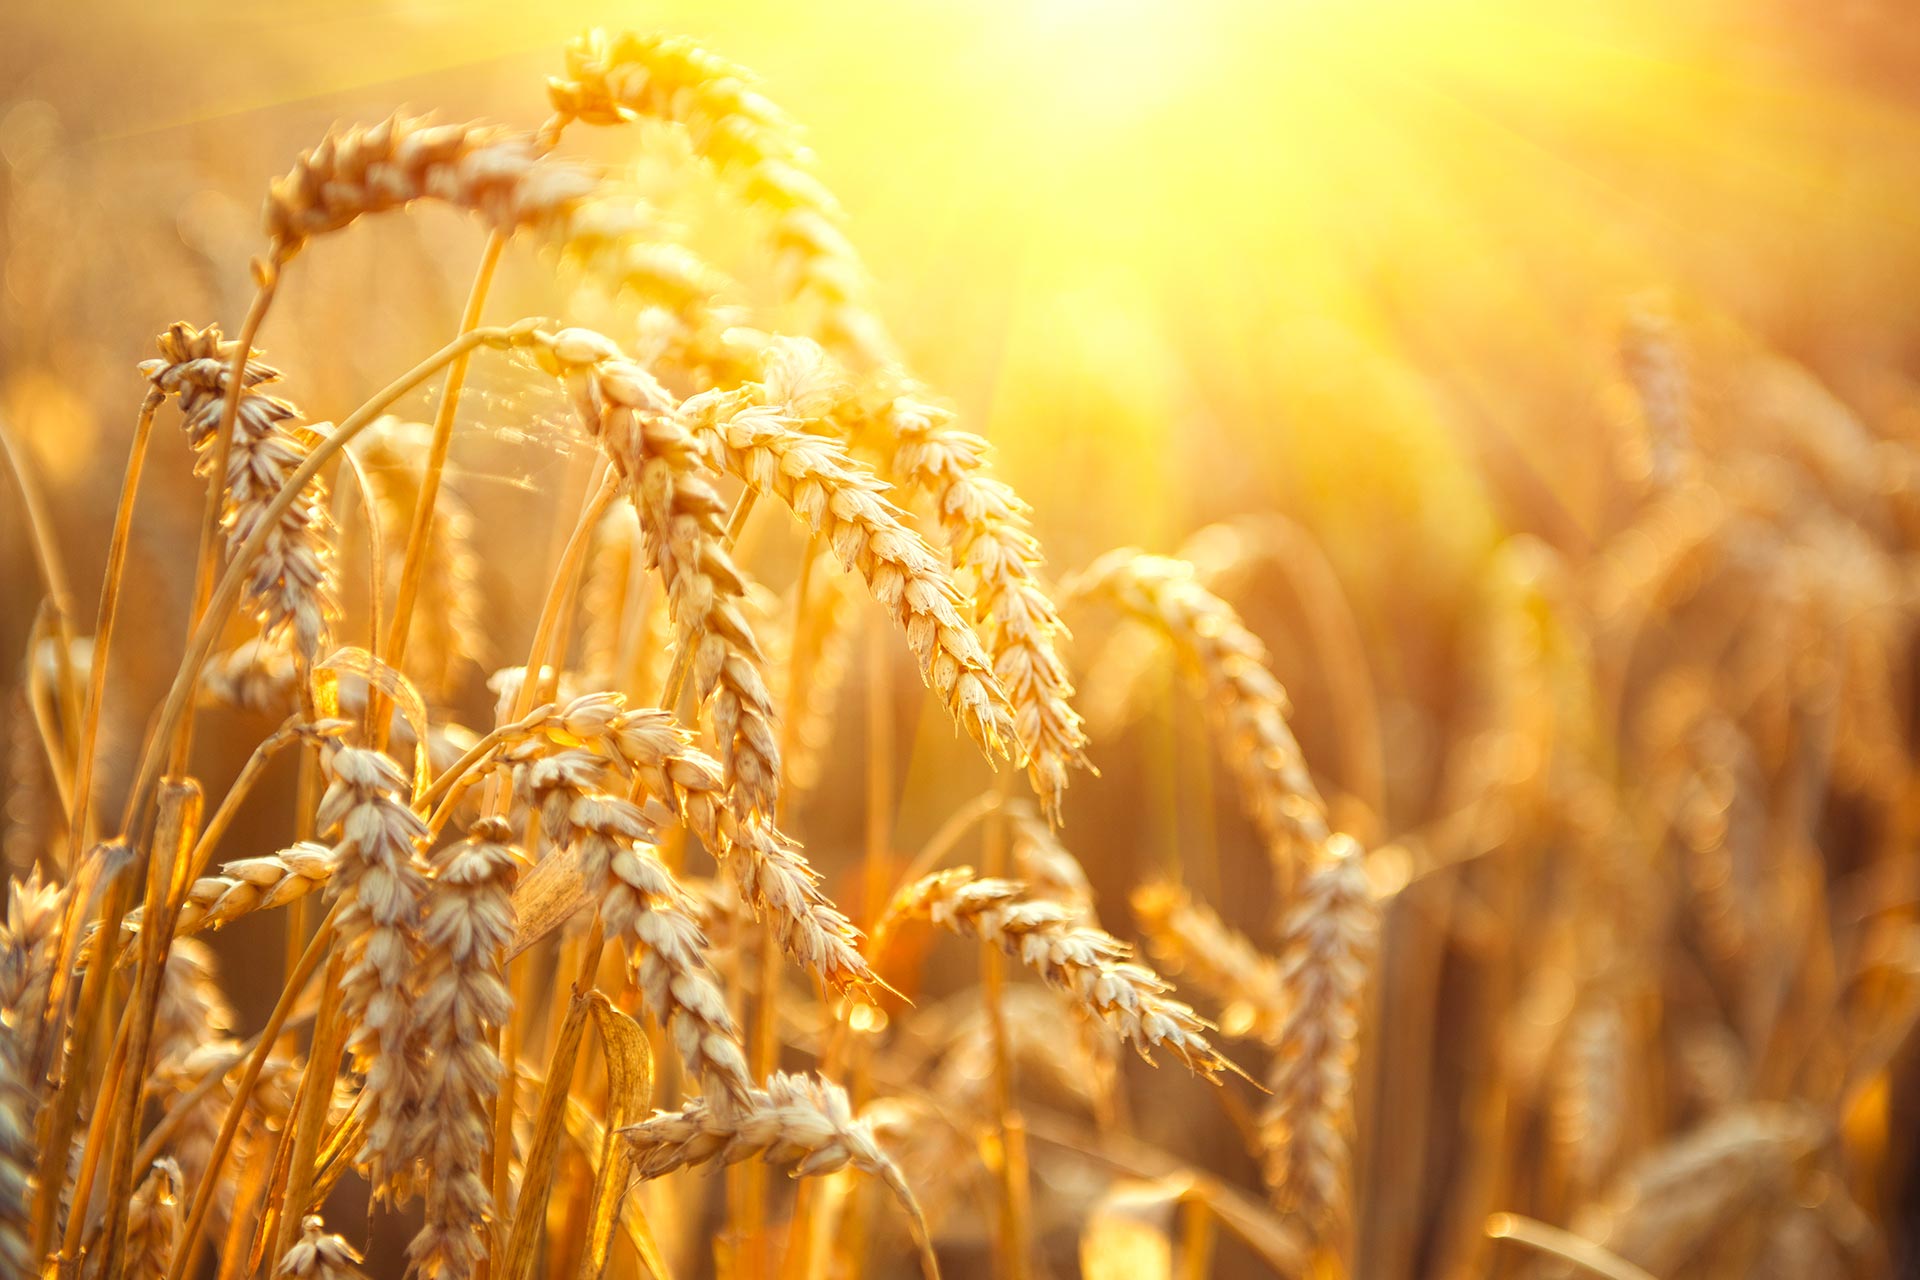 Agricoltori, cooperative, pastai e industria molitoria firmano un protocollo d'intesa per aumentare la disponibilità di grano duro italiano di qualità